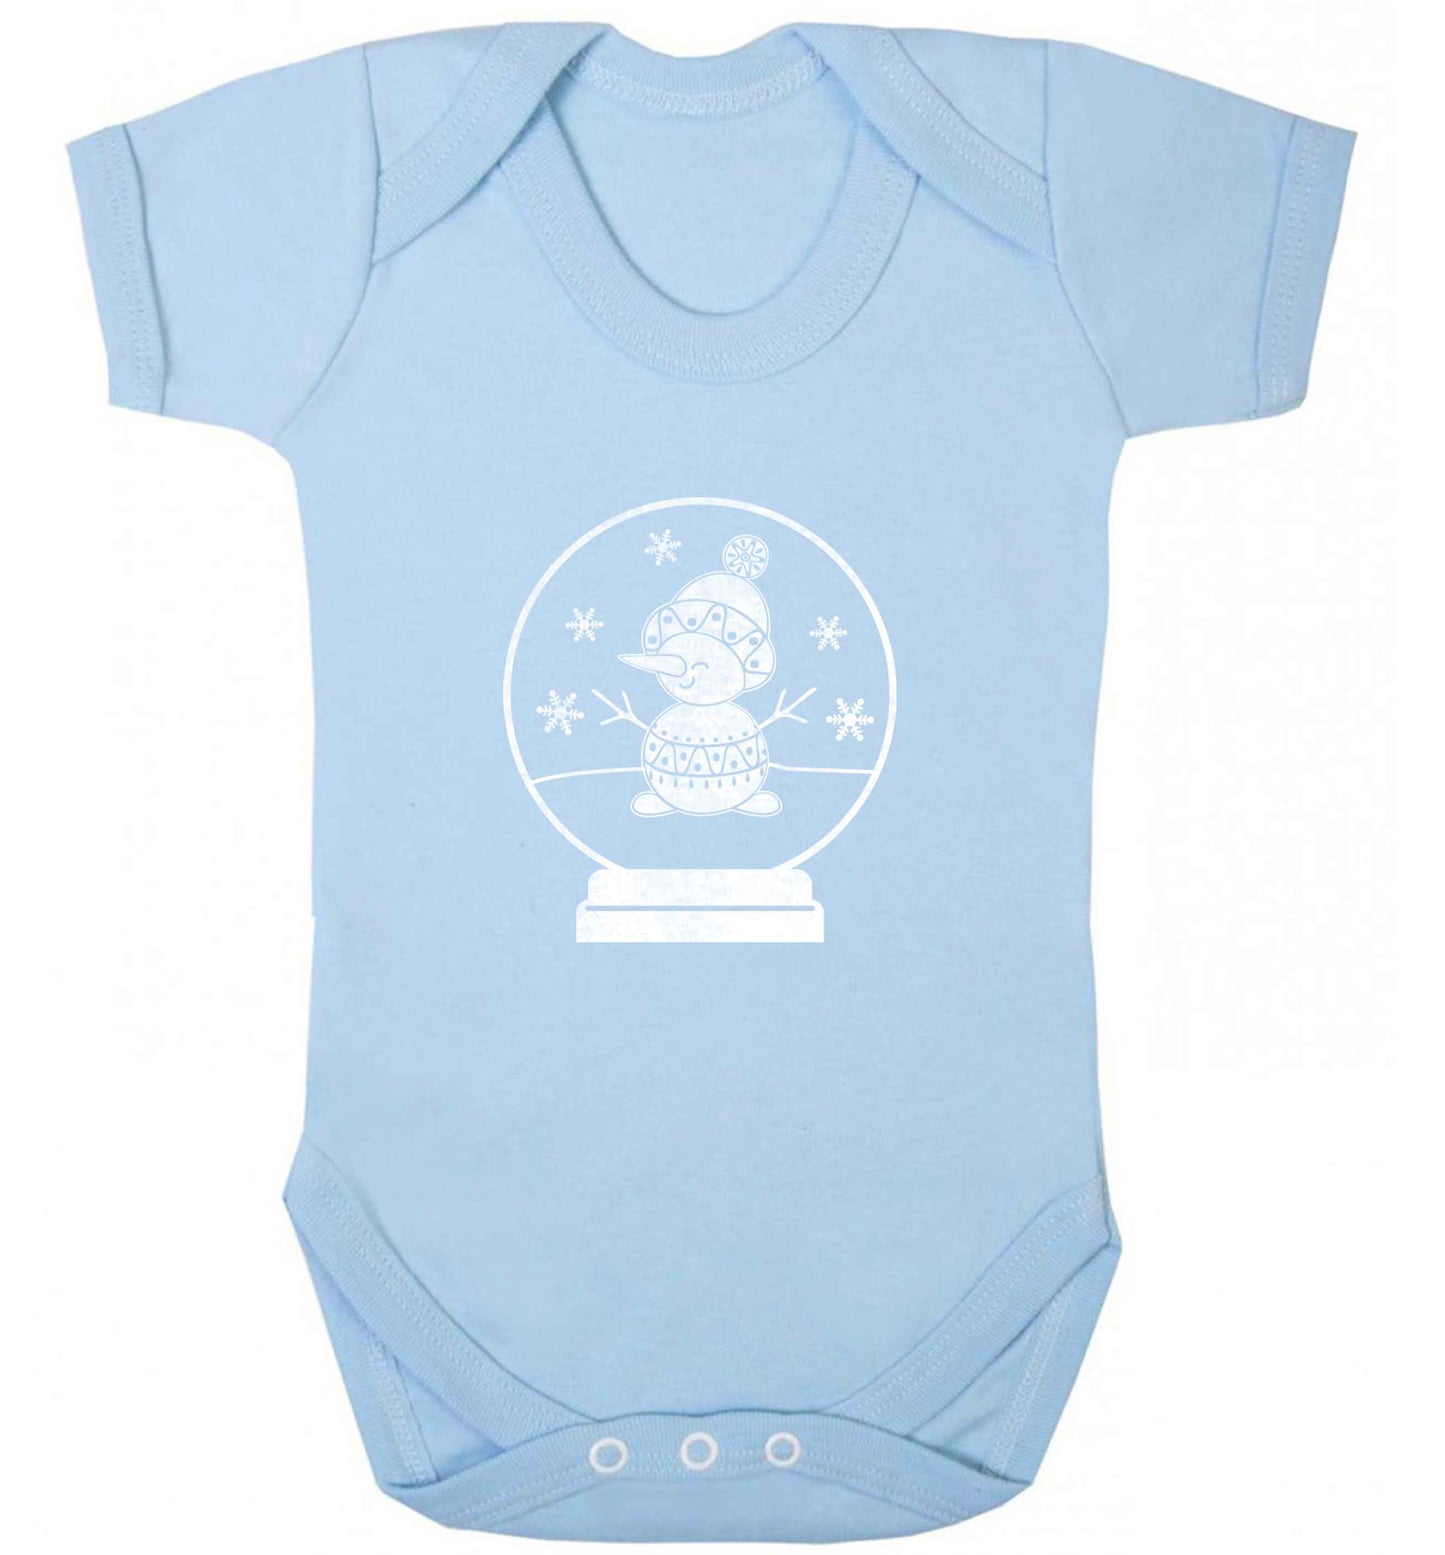 Snowman Snowglobe baby vest pale blue 18-24 months